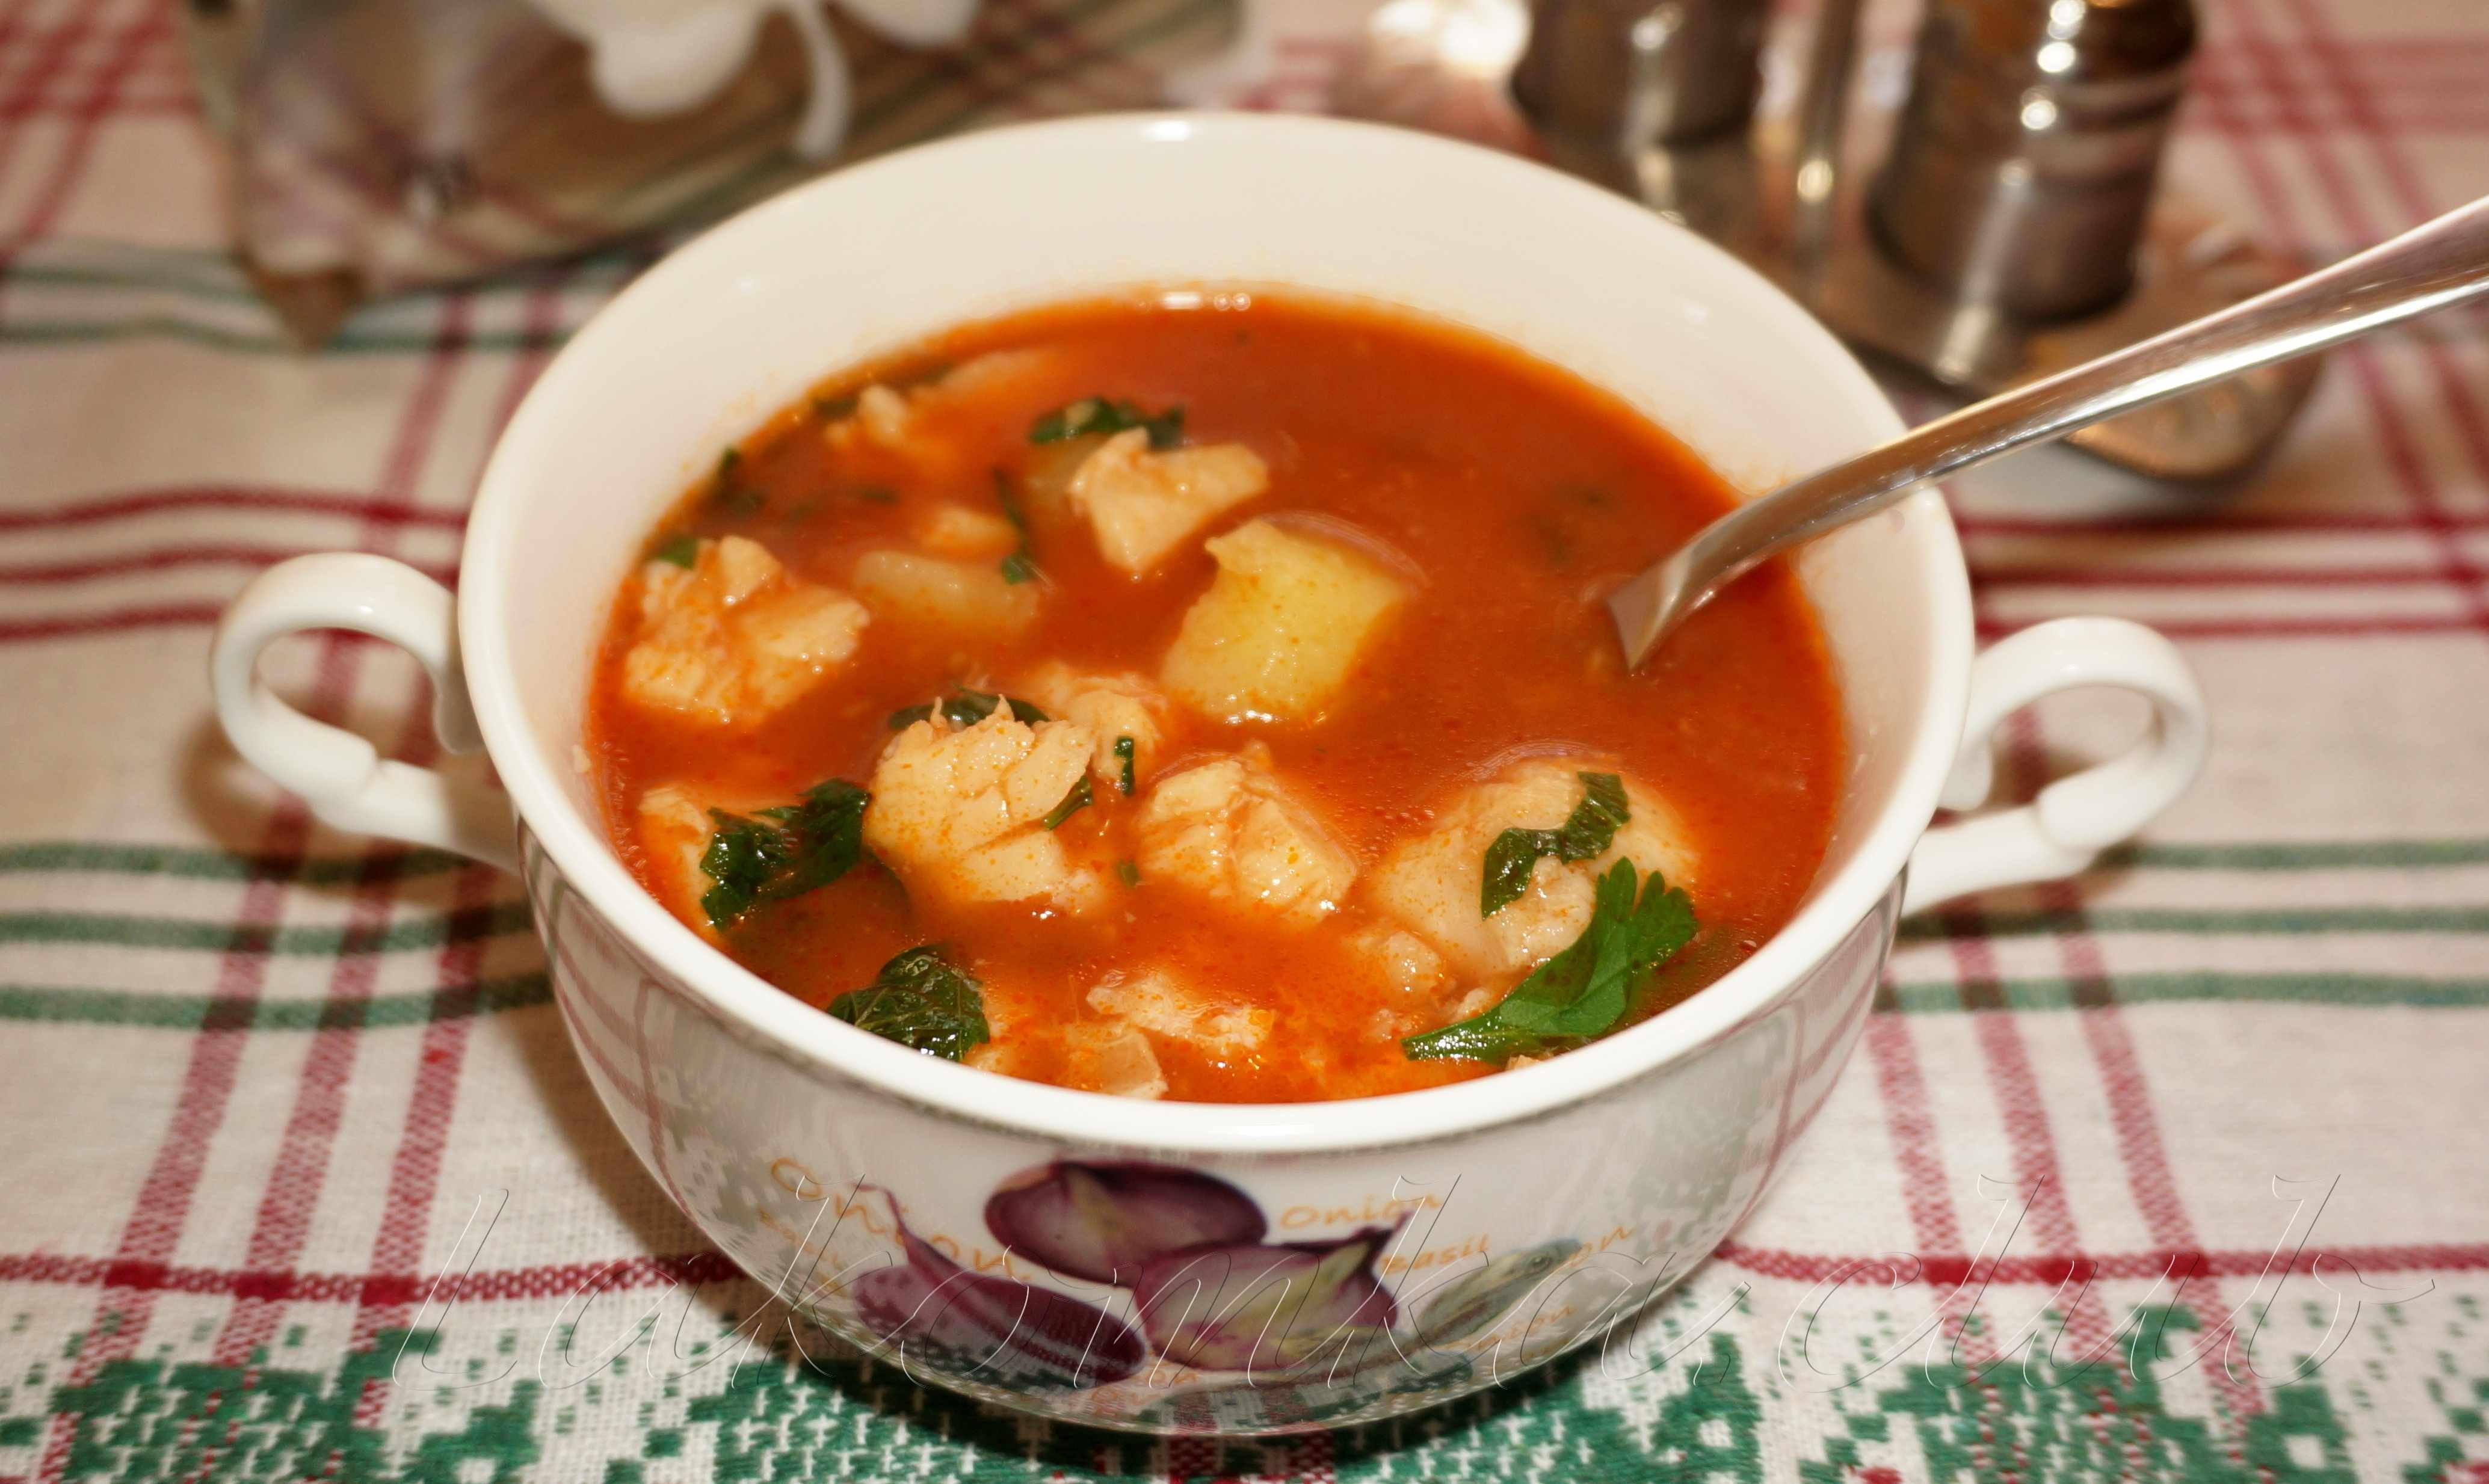 Рыбный суп из томатной консервы. Суп с килькой. Томатный суп с рыбой. Окрошка с килькой в томатном соусе. Рыбный суп из консервов с рыбой в томатном соусе.